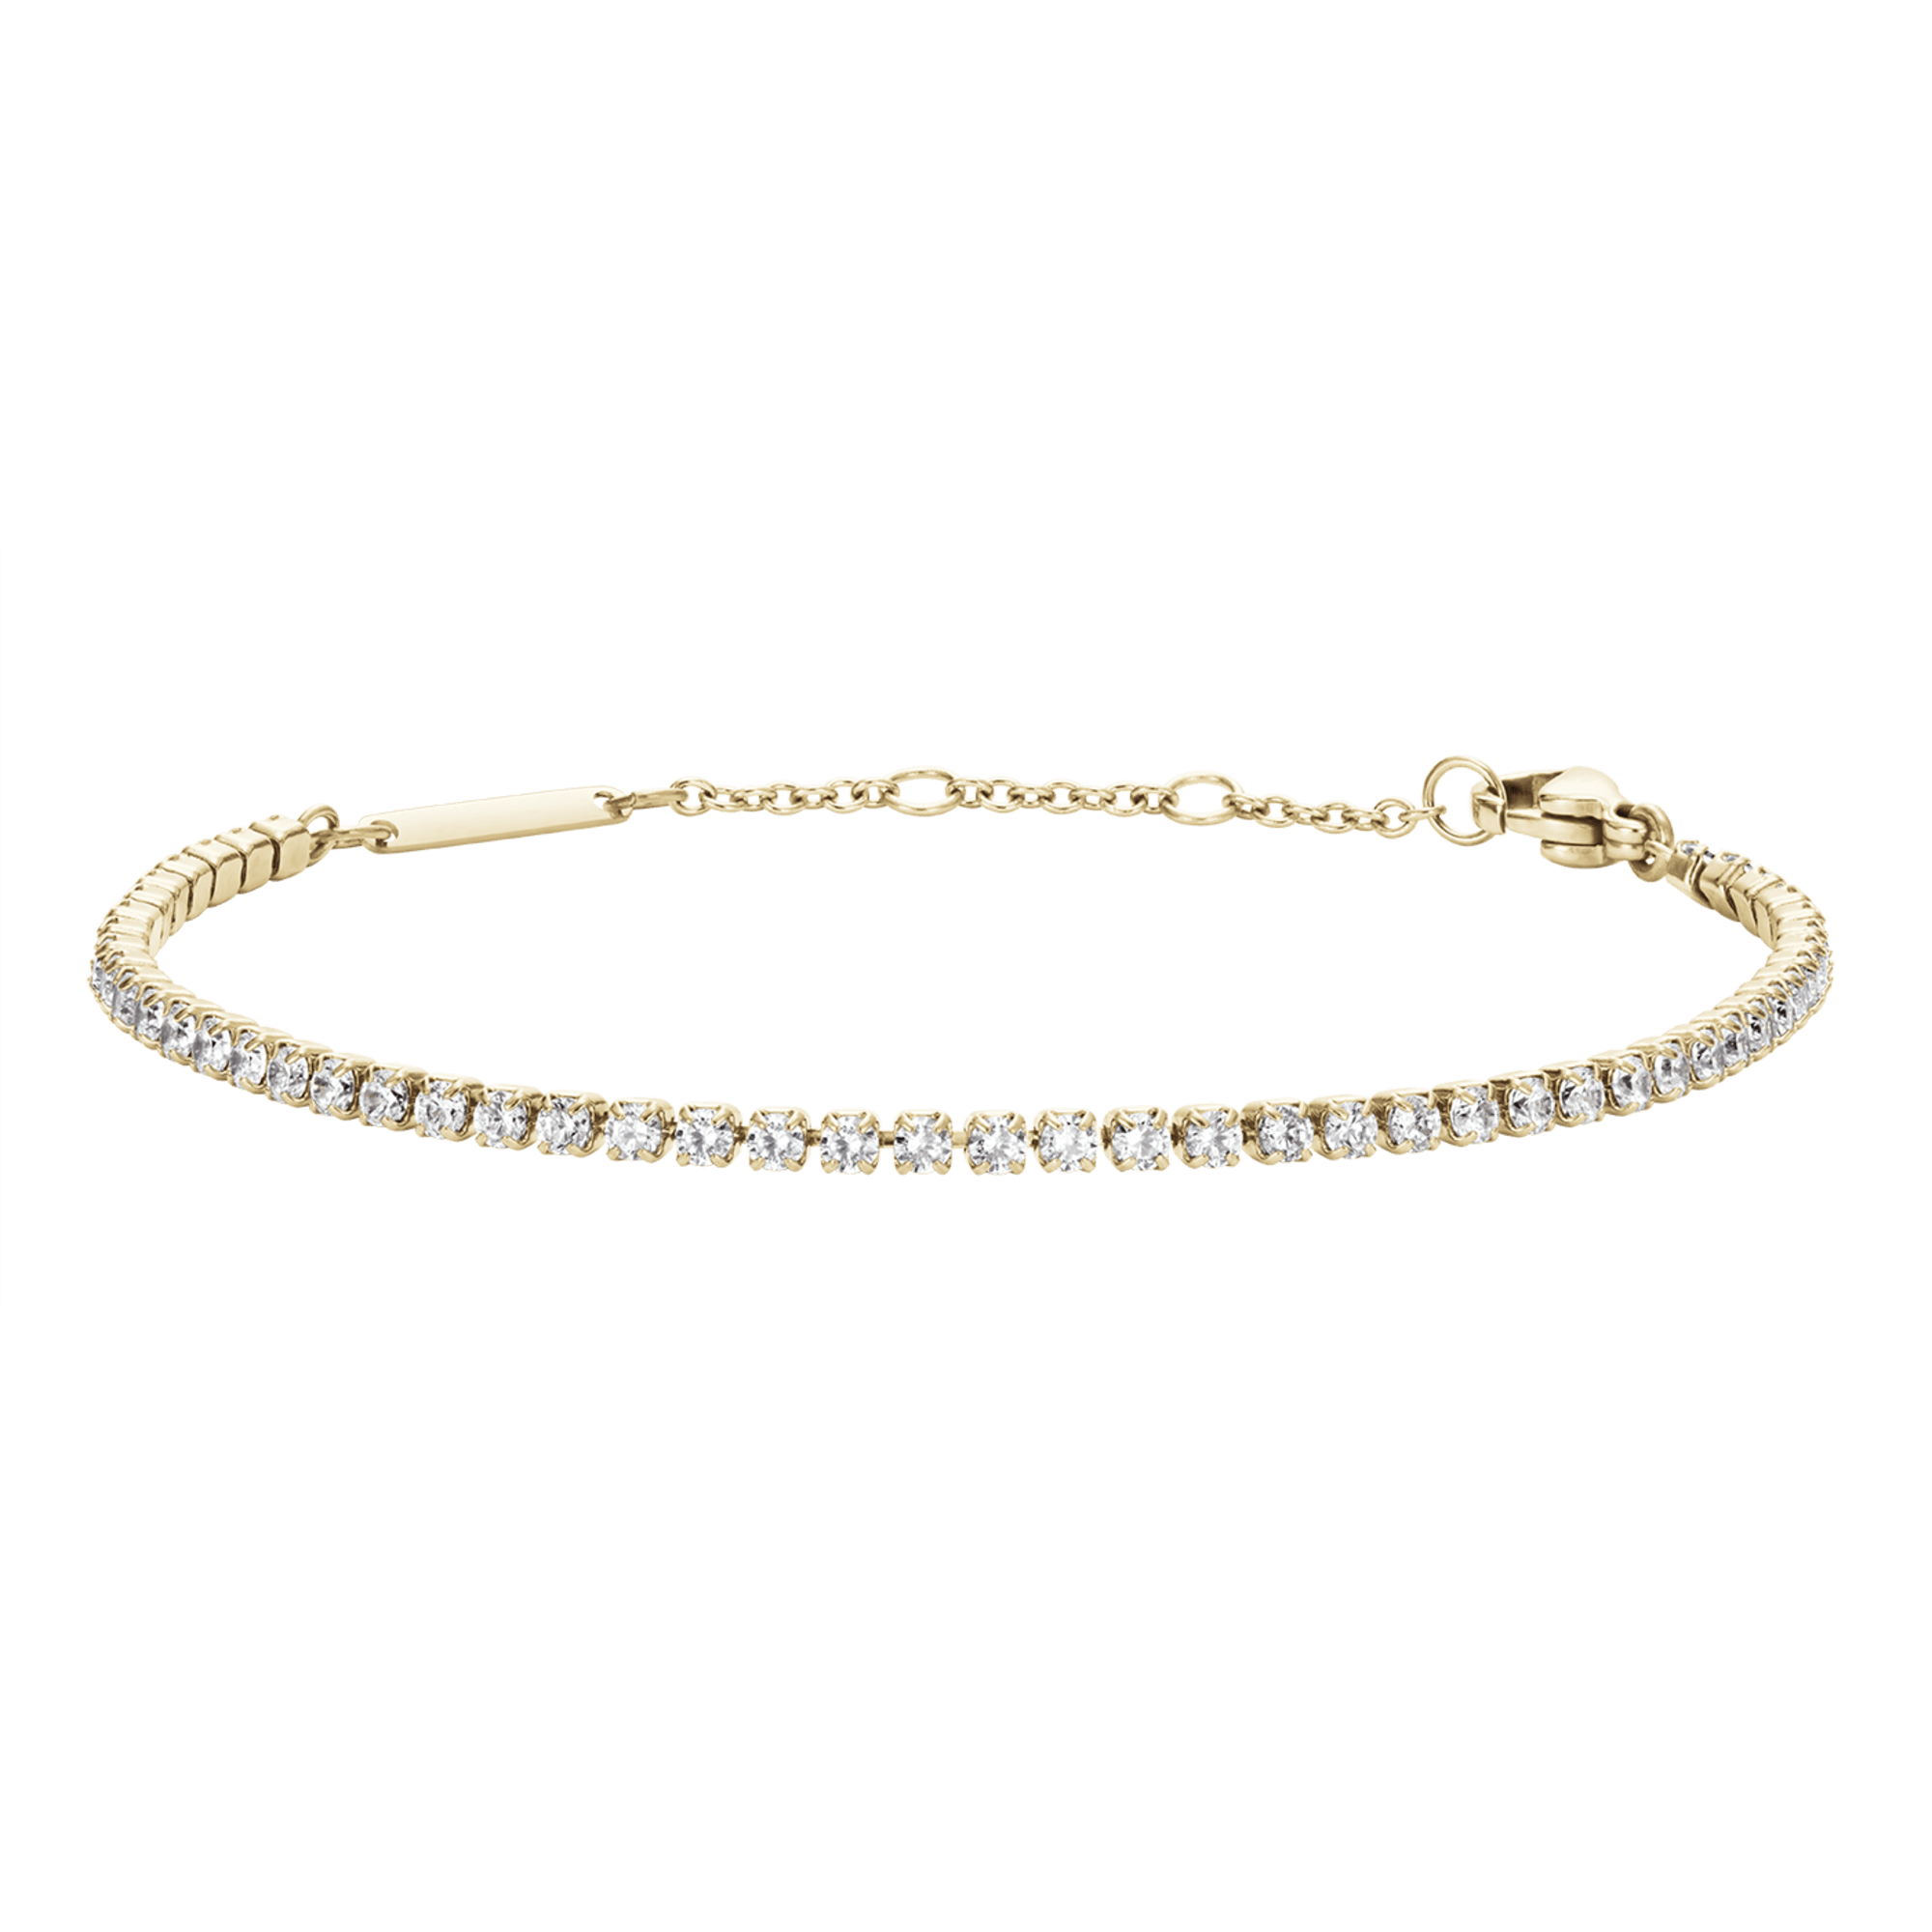 Macy's Diamond Tennis Bracelet in Sterling Silver (1/2 ct. t.w.) - Macy's